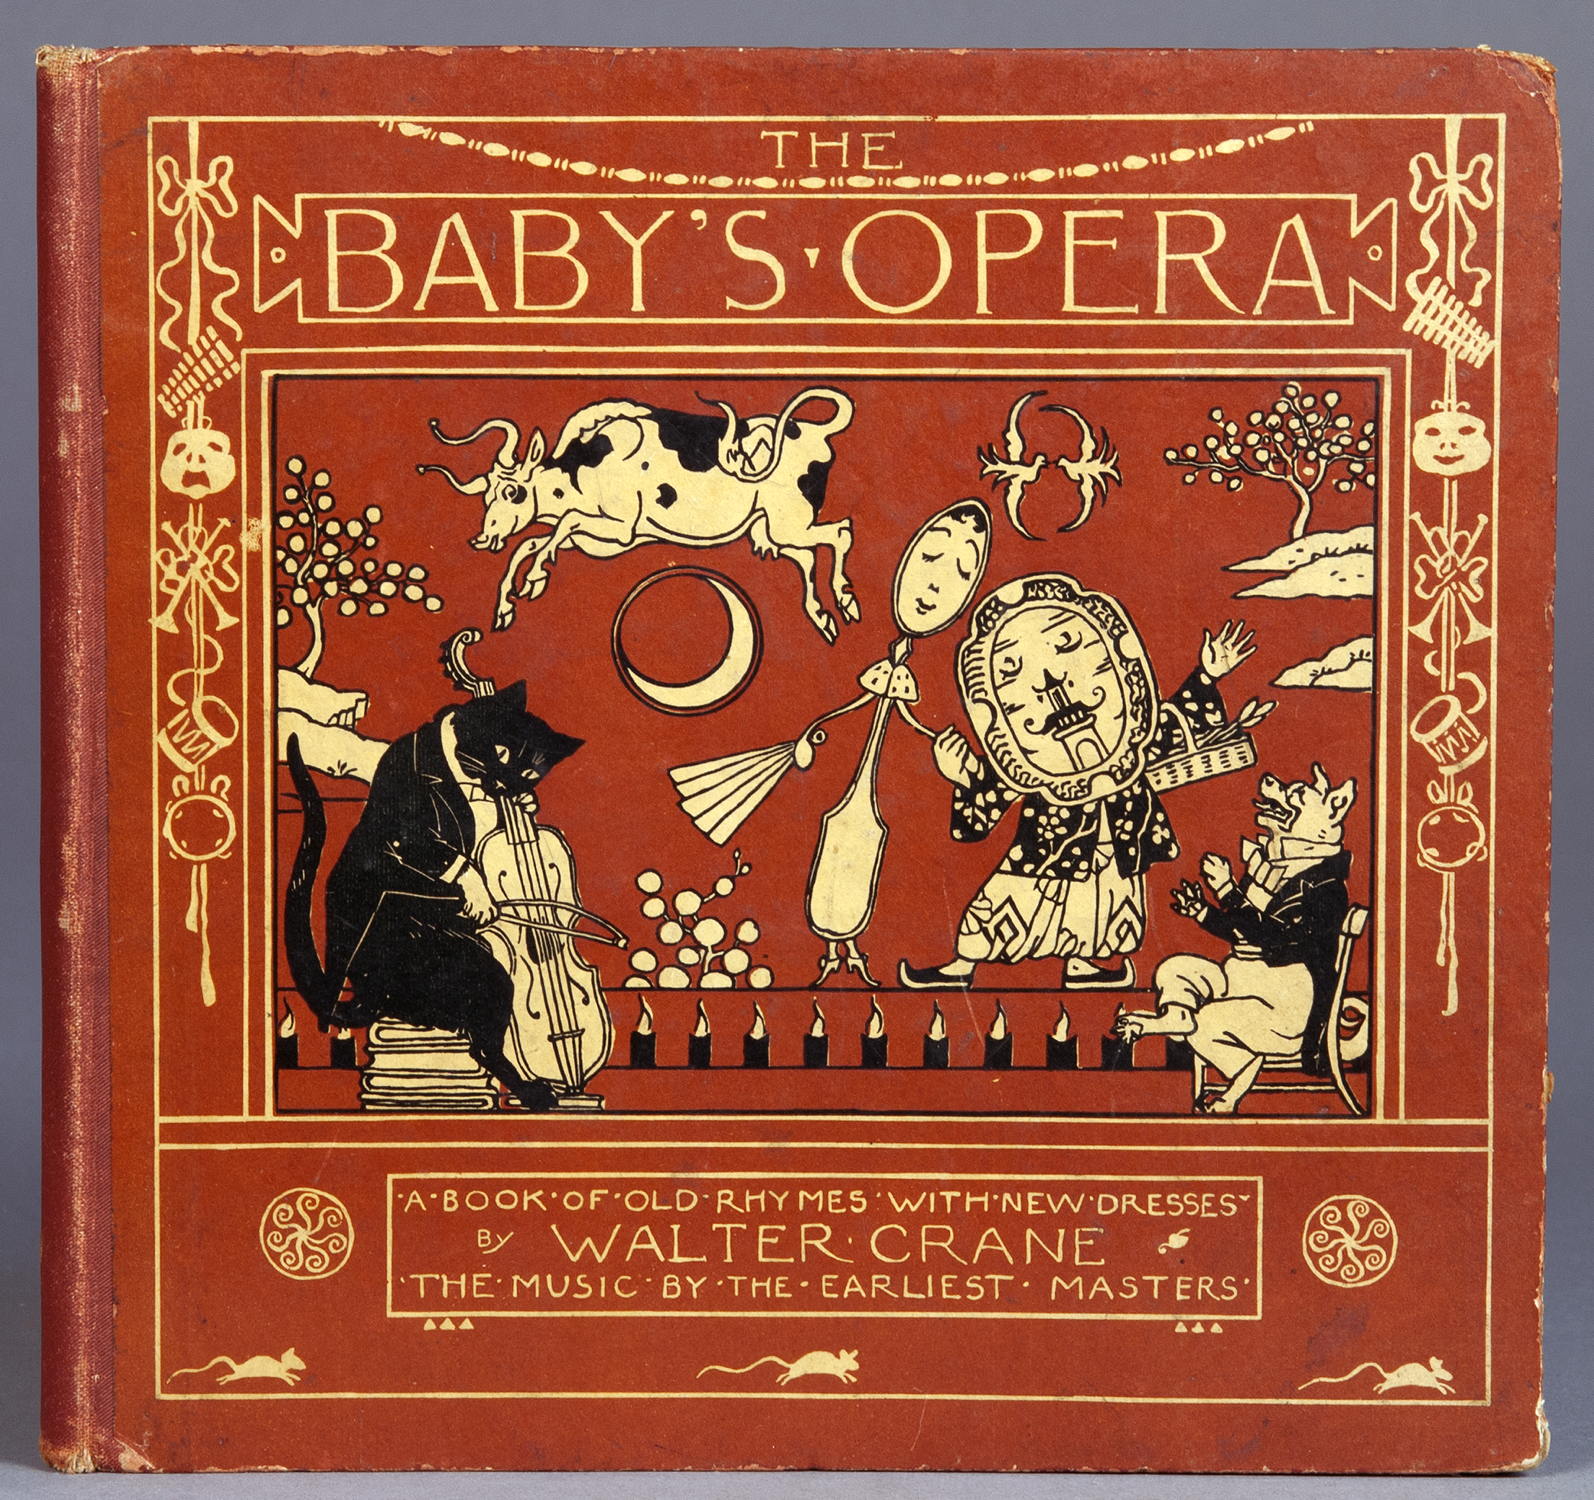 Walter Crane - The Baby’s Opera.